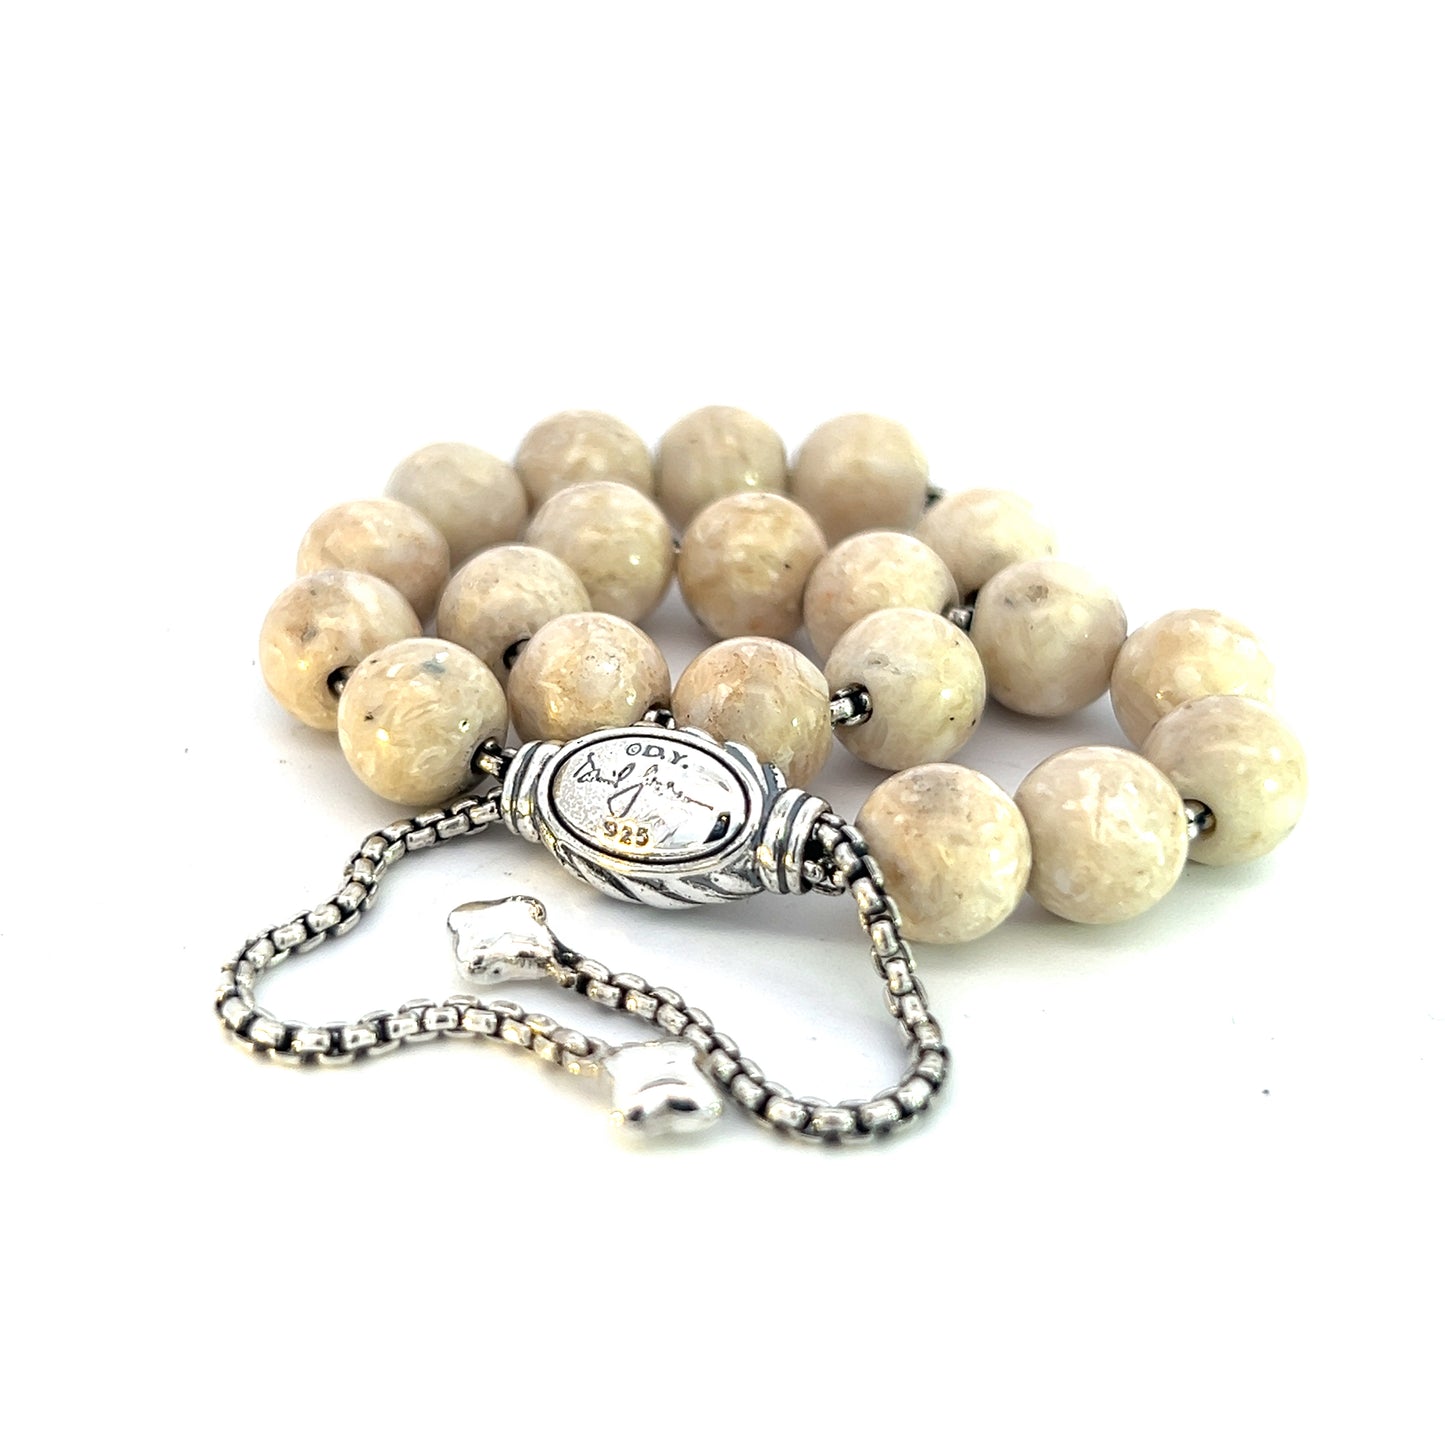 David Yurman Authentic Estate River Stone Spiritual Beads Bracelet 6.6 - 8.5" Silver 8 mm DY451